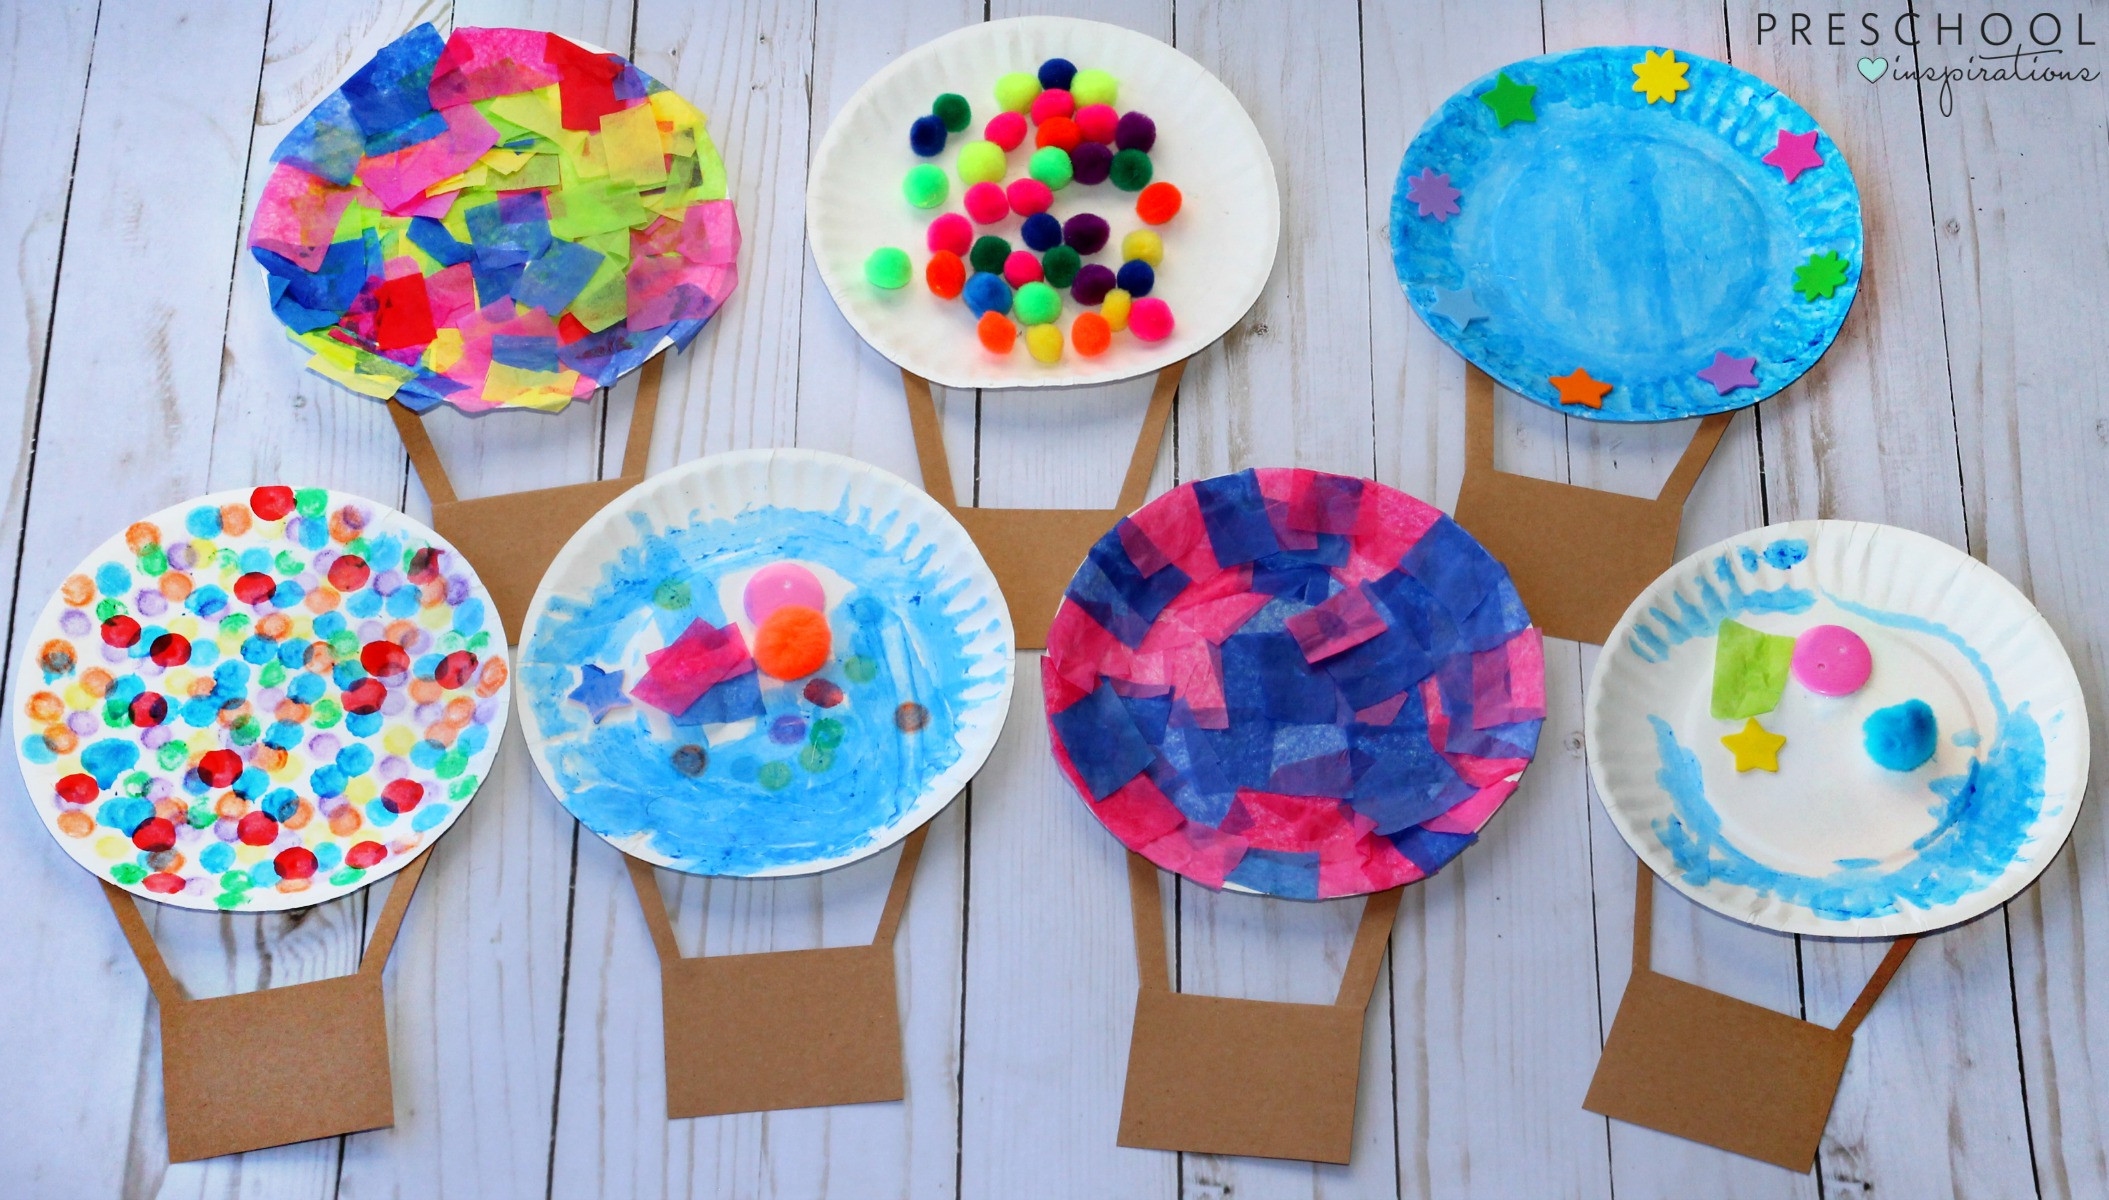 Preschoolers Arts And Crafts Ideas
 Hot Air Balloon Art Activity Preschool Inspirations